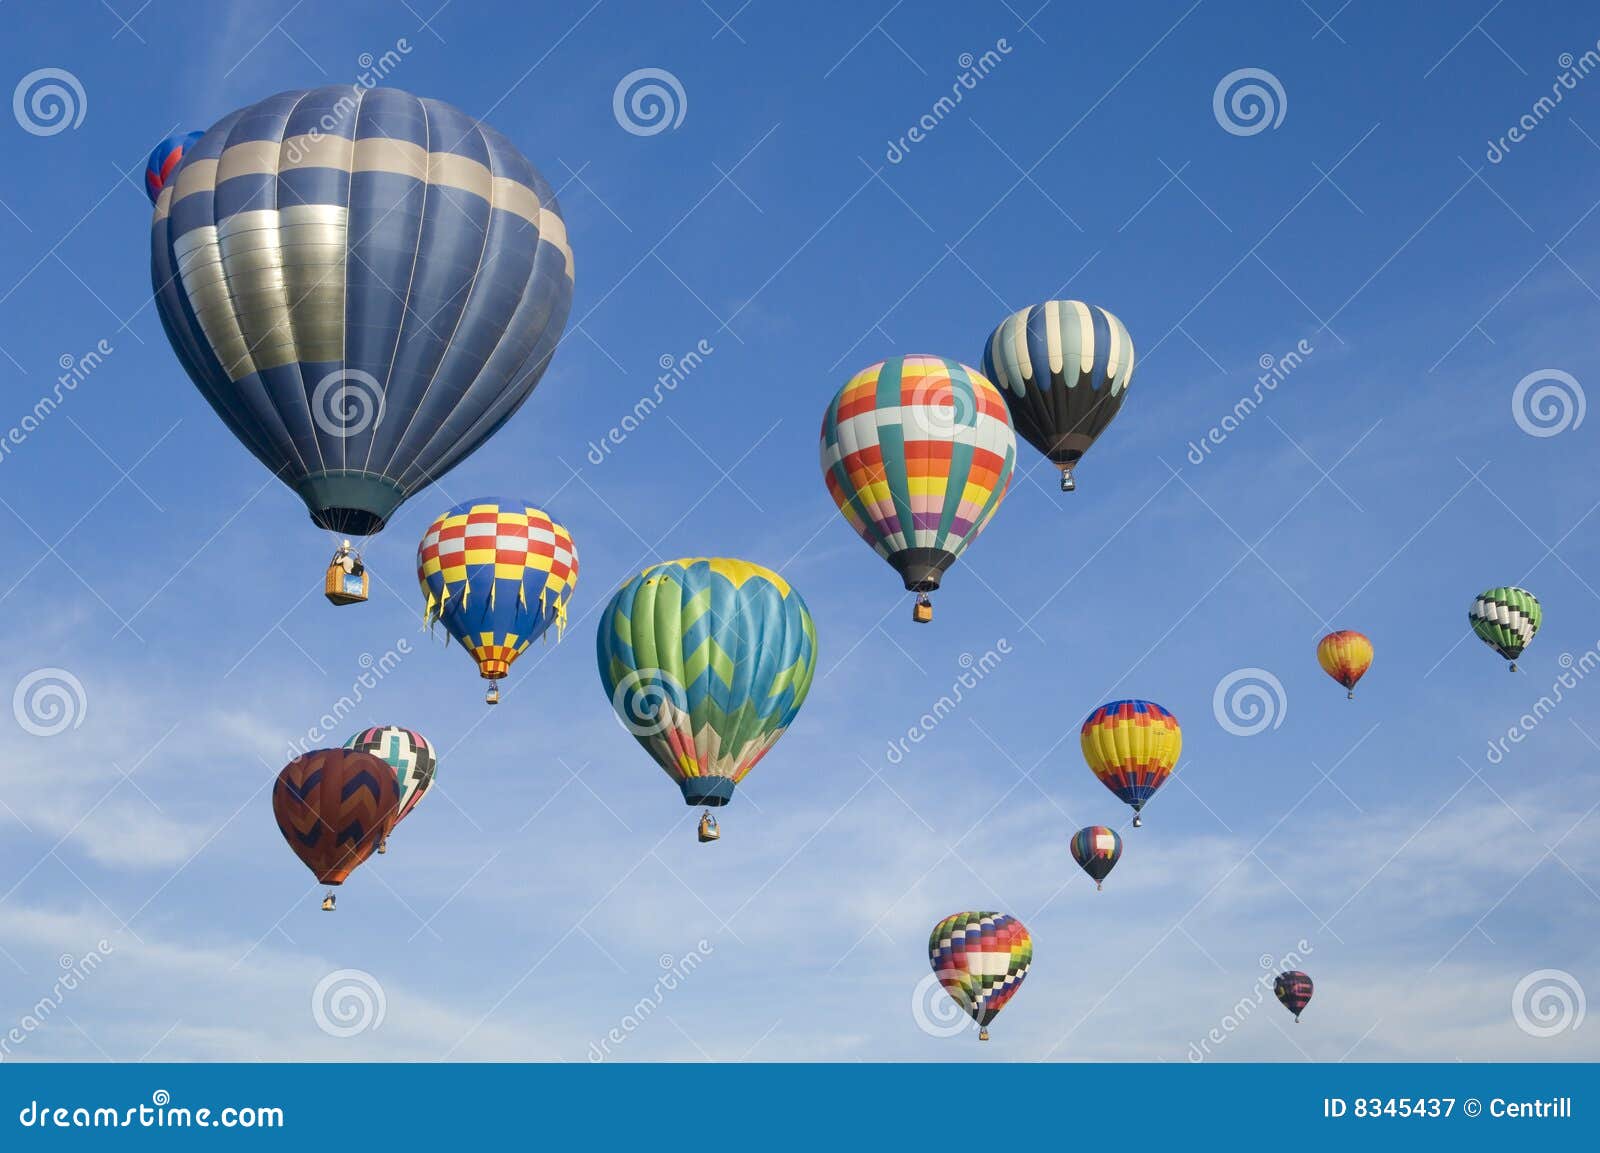 albuquerque international balloon festival